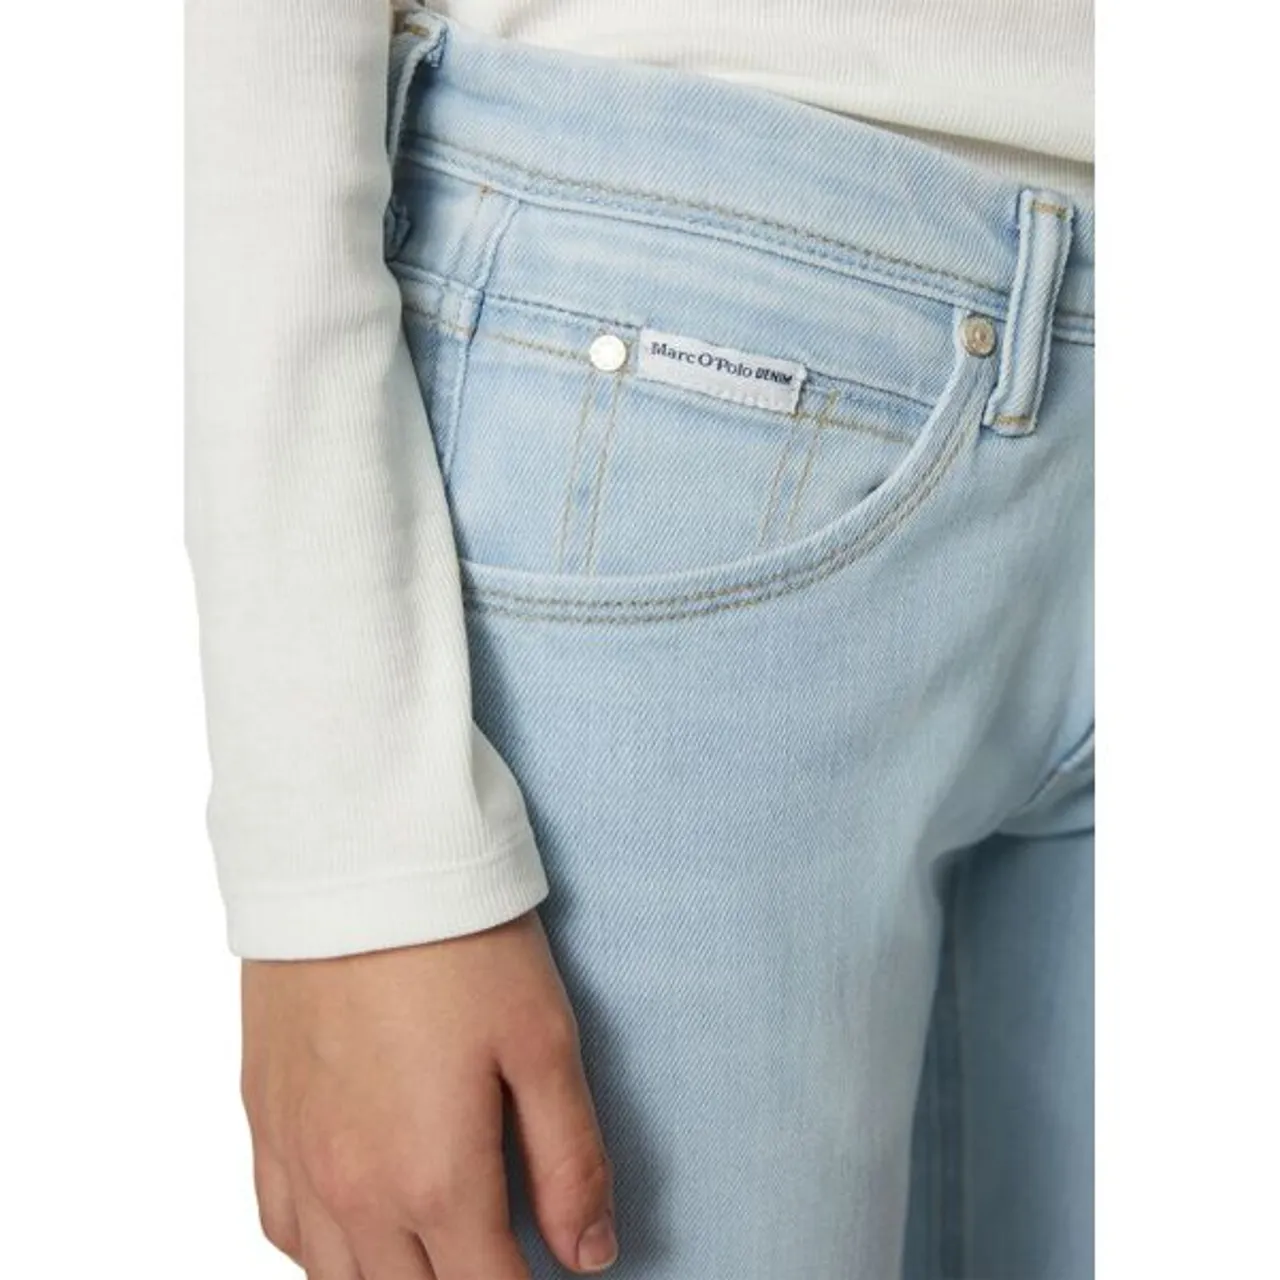 Slim-fit-Jeans MARC O'POLO DENIM "aus stretchigem Organic Cotton" Gr. 32 32, Länge 32, blau Damen Jeans Röhrenjeans